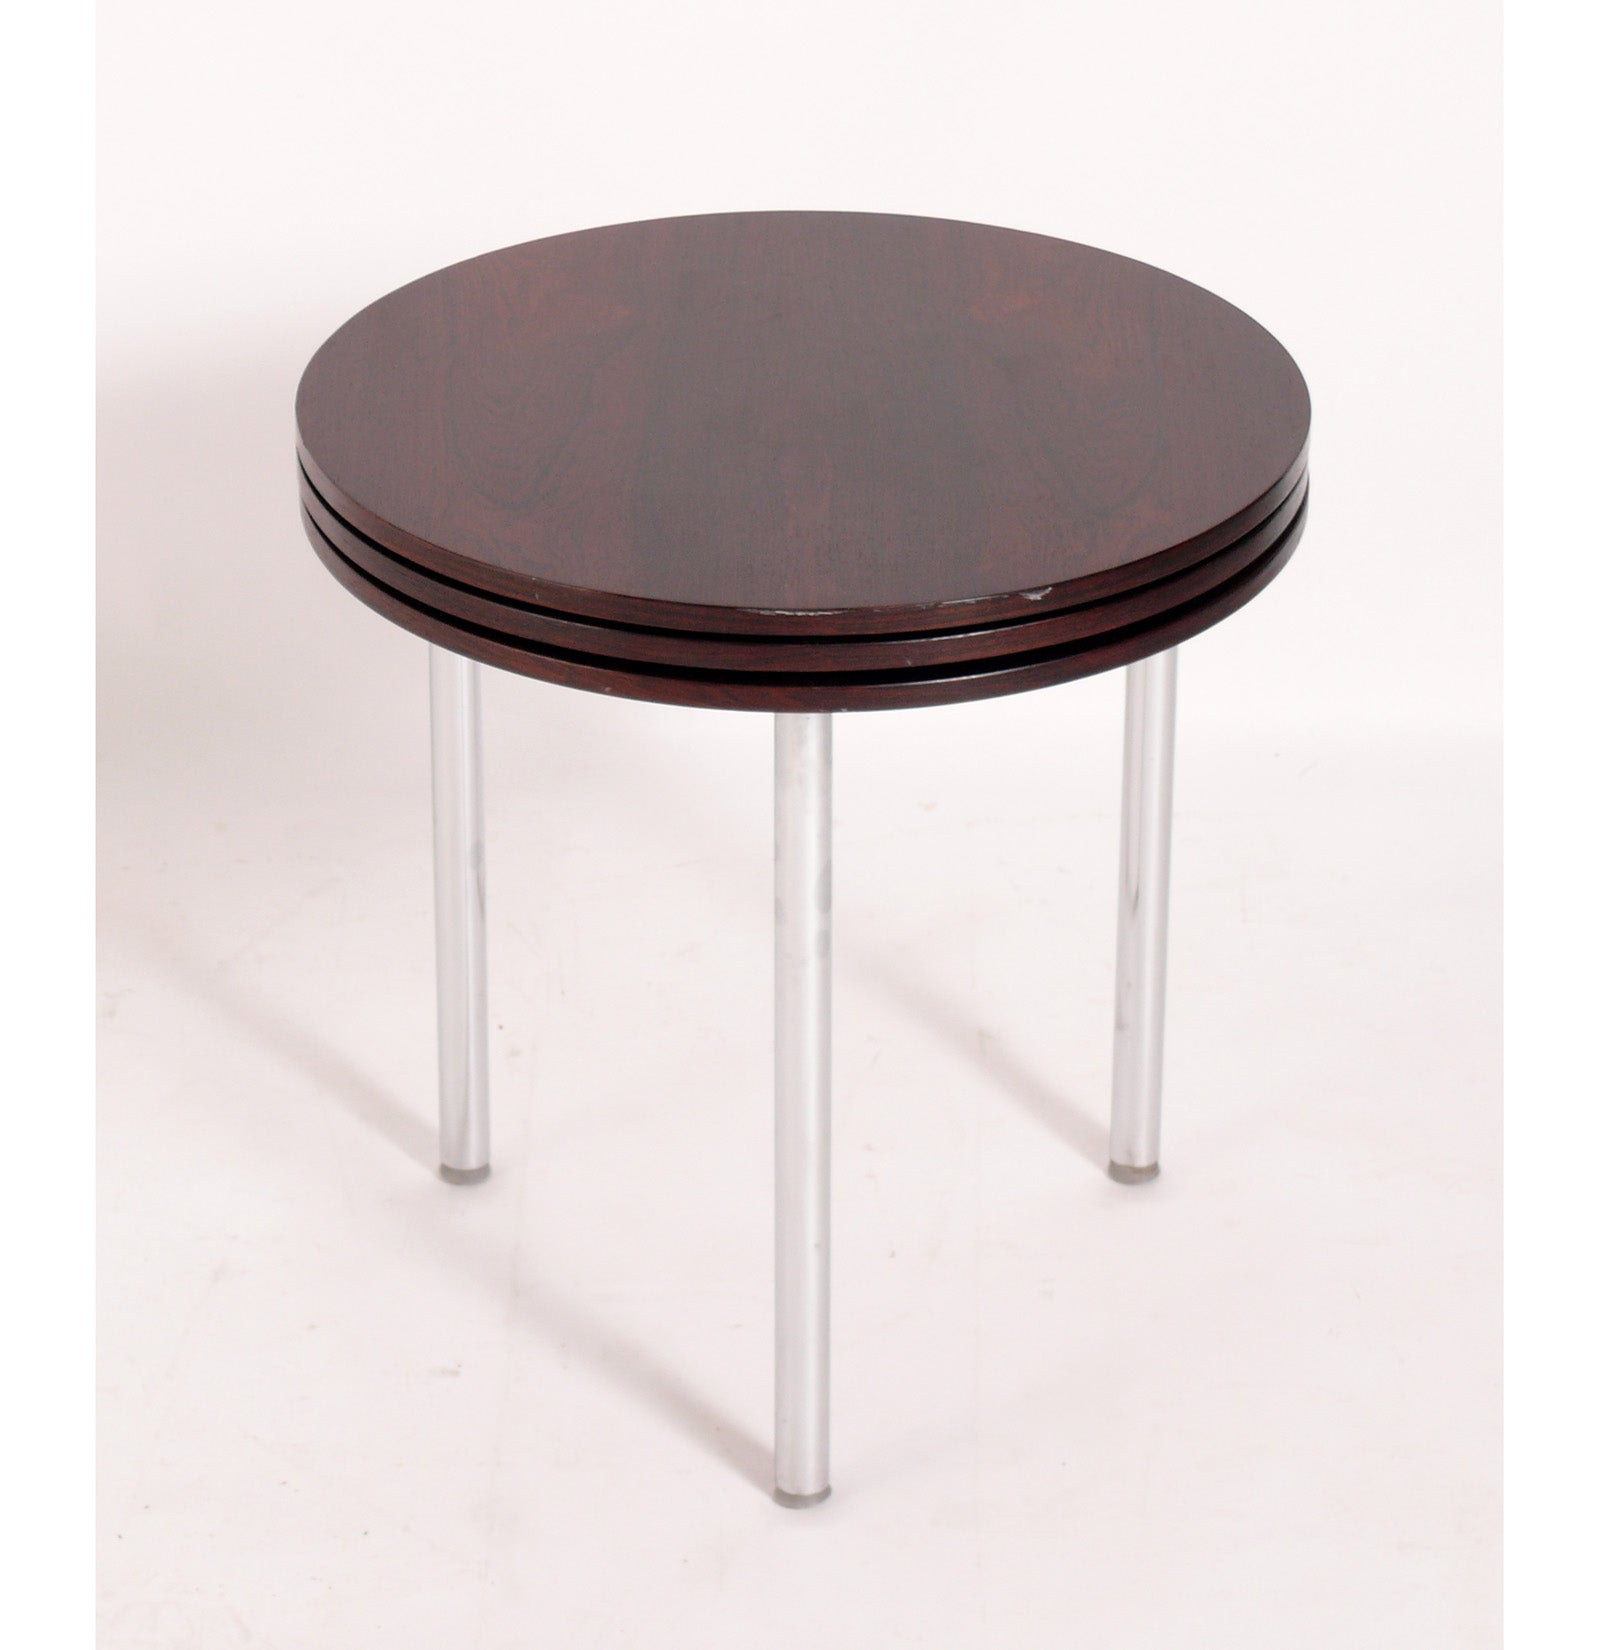 Tables empilables danoises modernes en palissandre, conçues par Poul Norreklit pour E. Pedersen, Danemark, vers les années 1960. La conception ingénieuse permet d'empiler trois tables dans l'espace d'une seule table !